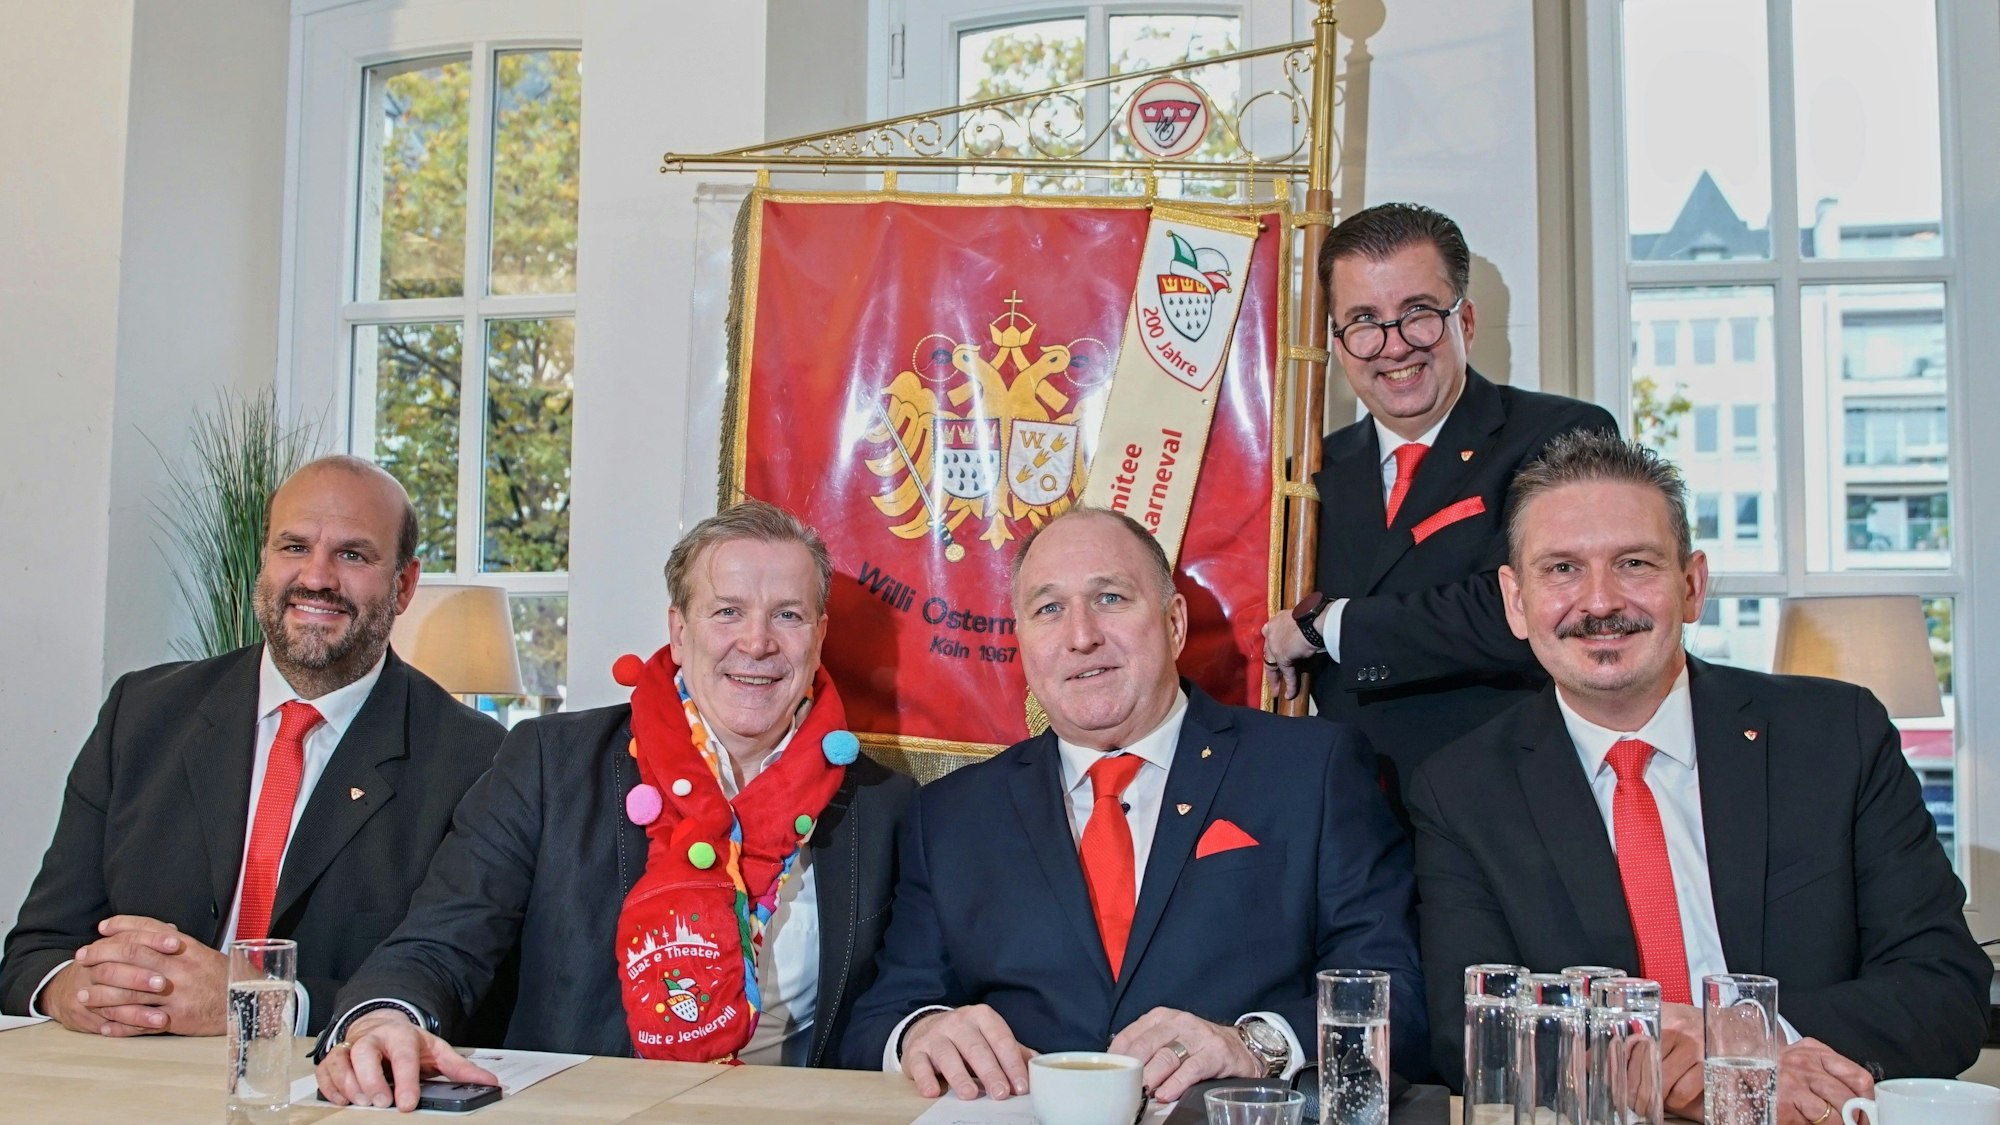 Fünf Männer in Anzügen sitzen an einem Tisch und lächeln in die Kamera.